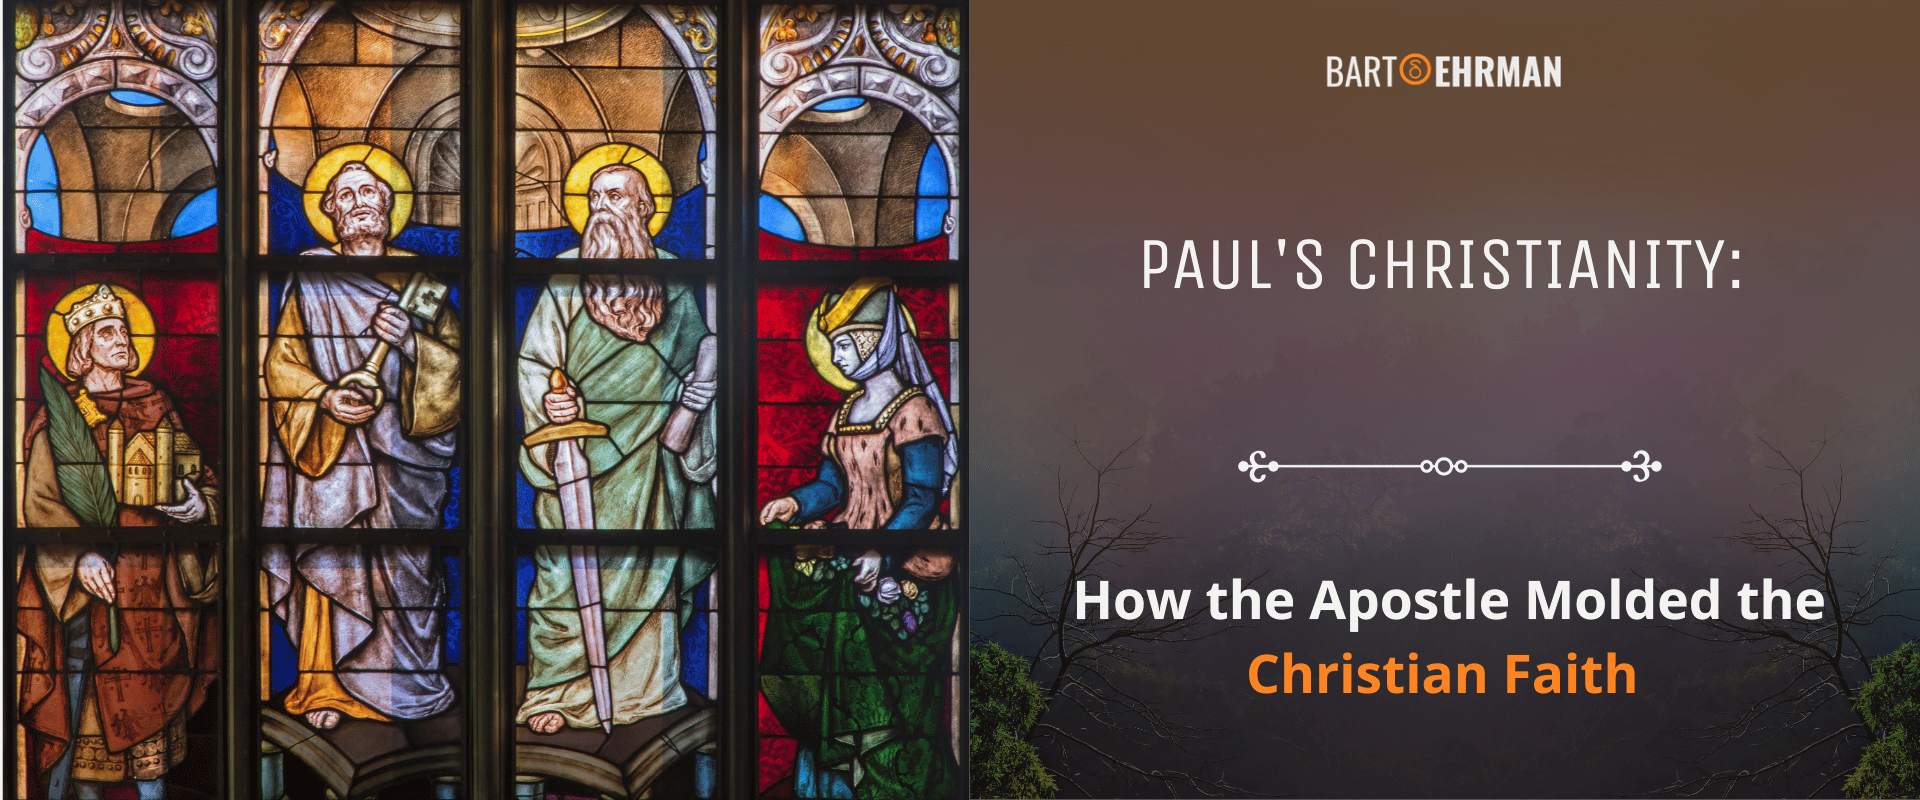 Paul's Christianity - How the Apostle Molded the Christian Faith